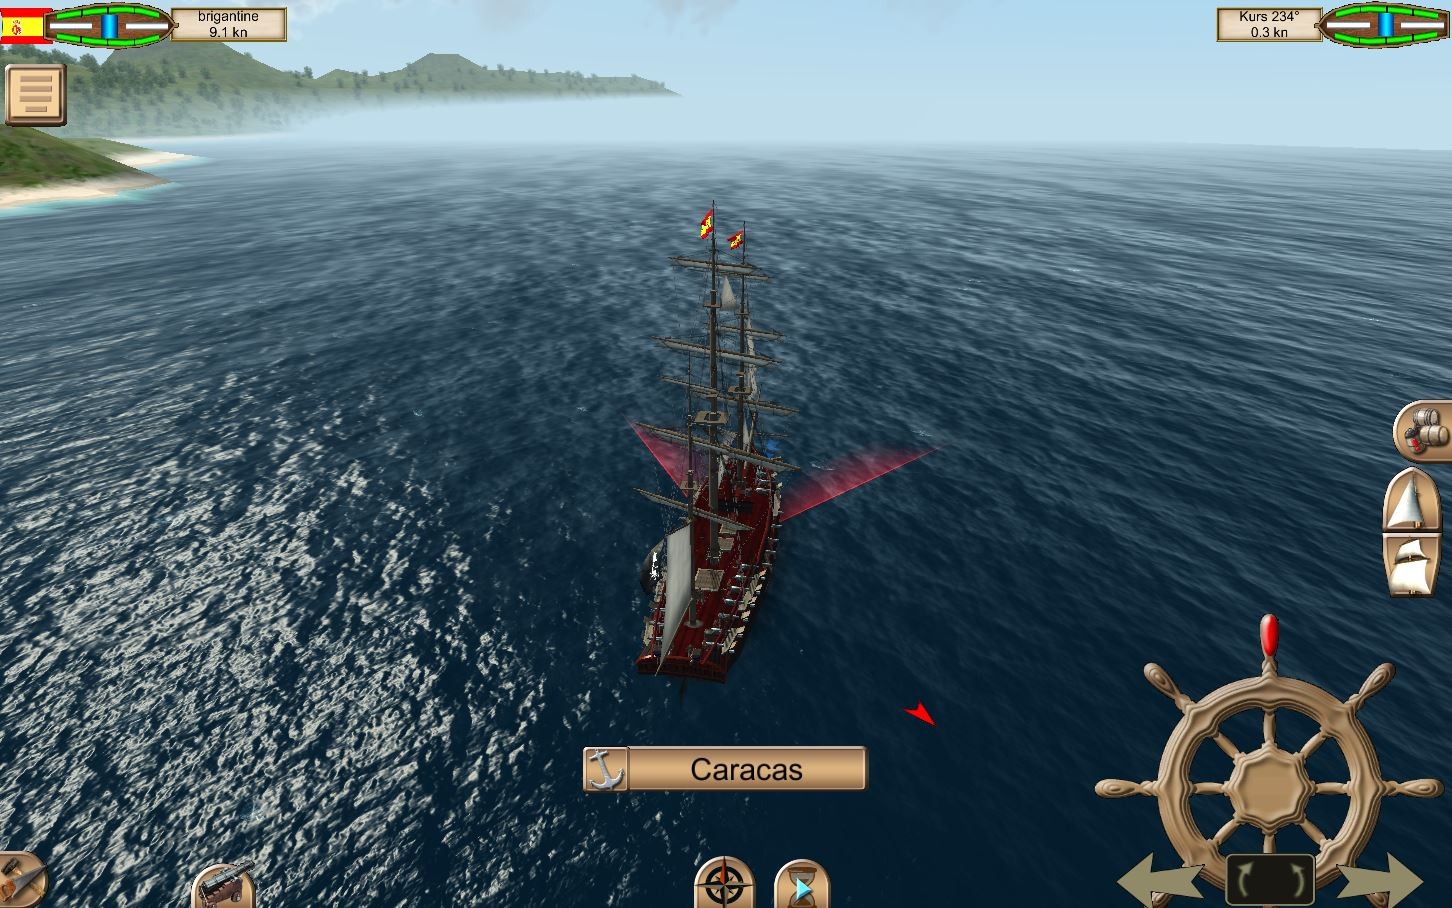 the pirate caribbean hunt glitch took my ships